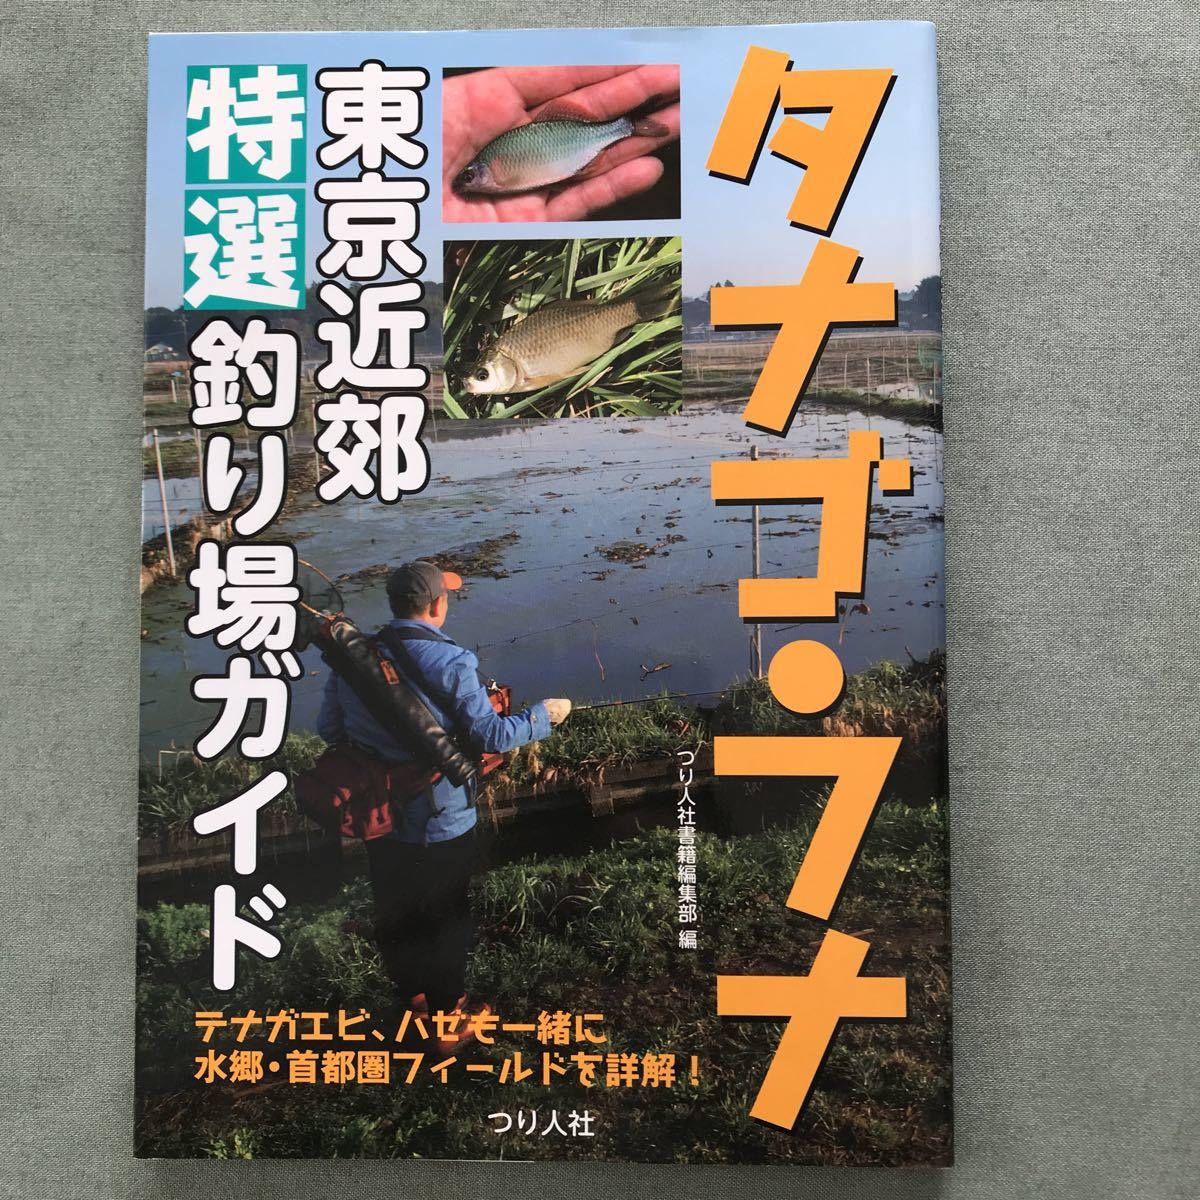 tanago crucian Tokyo outskirts special selection fishing place guide book@tanago fishing crucian fishing tenaga shrimp is ze Saitama Chiba river fishing 